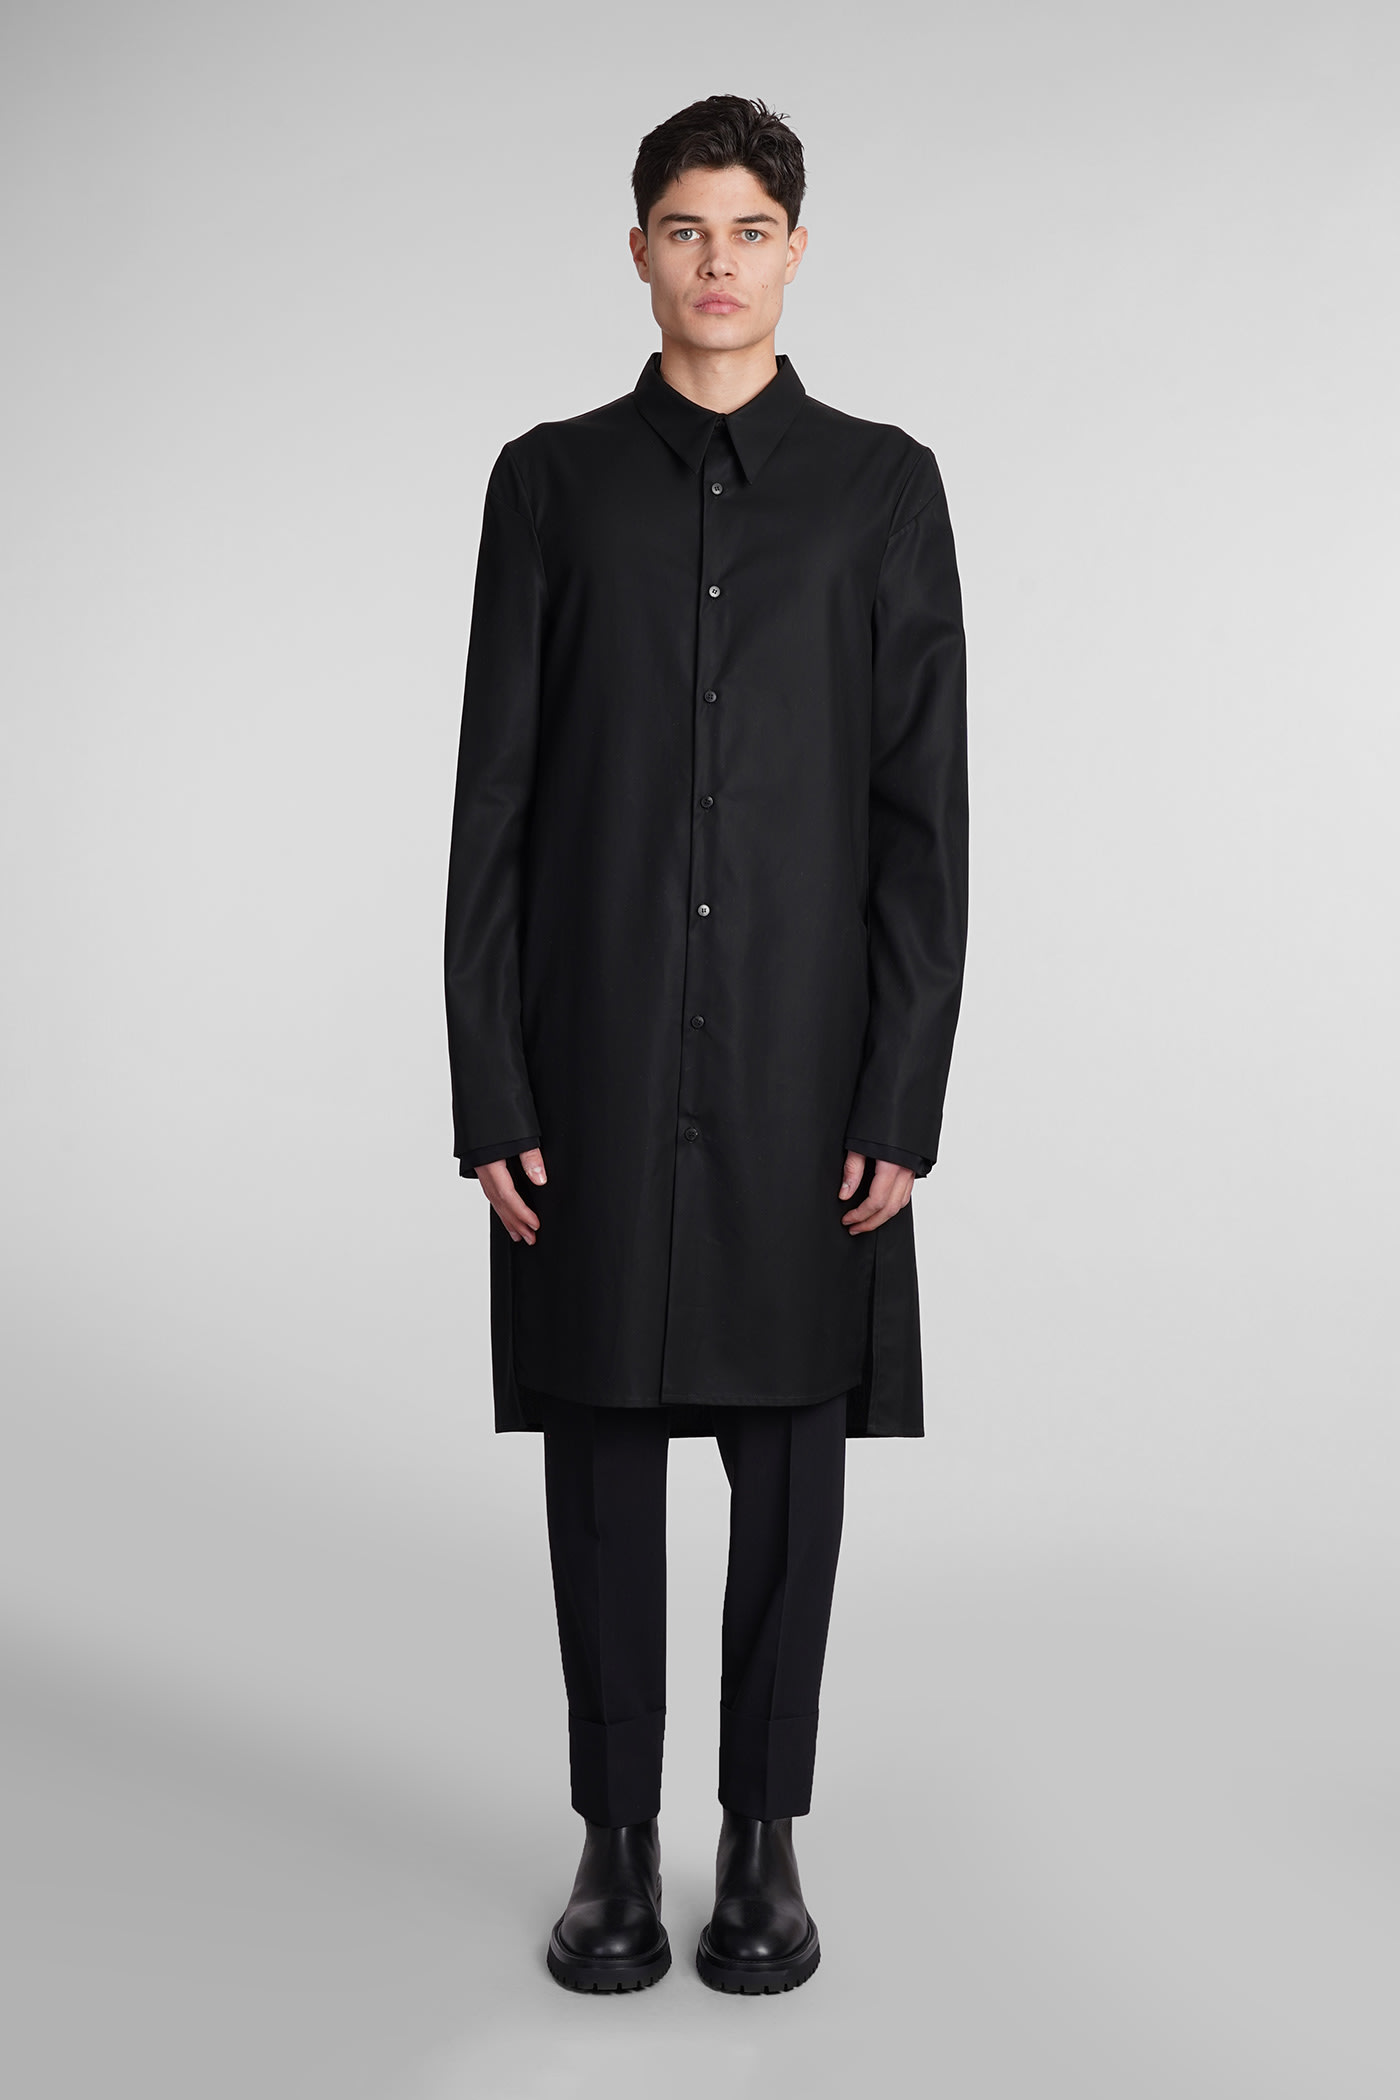 Sapio N151 Coat In Black Cotton